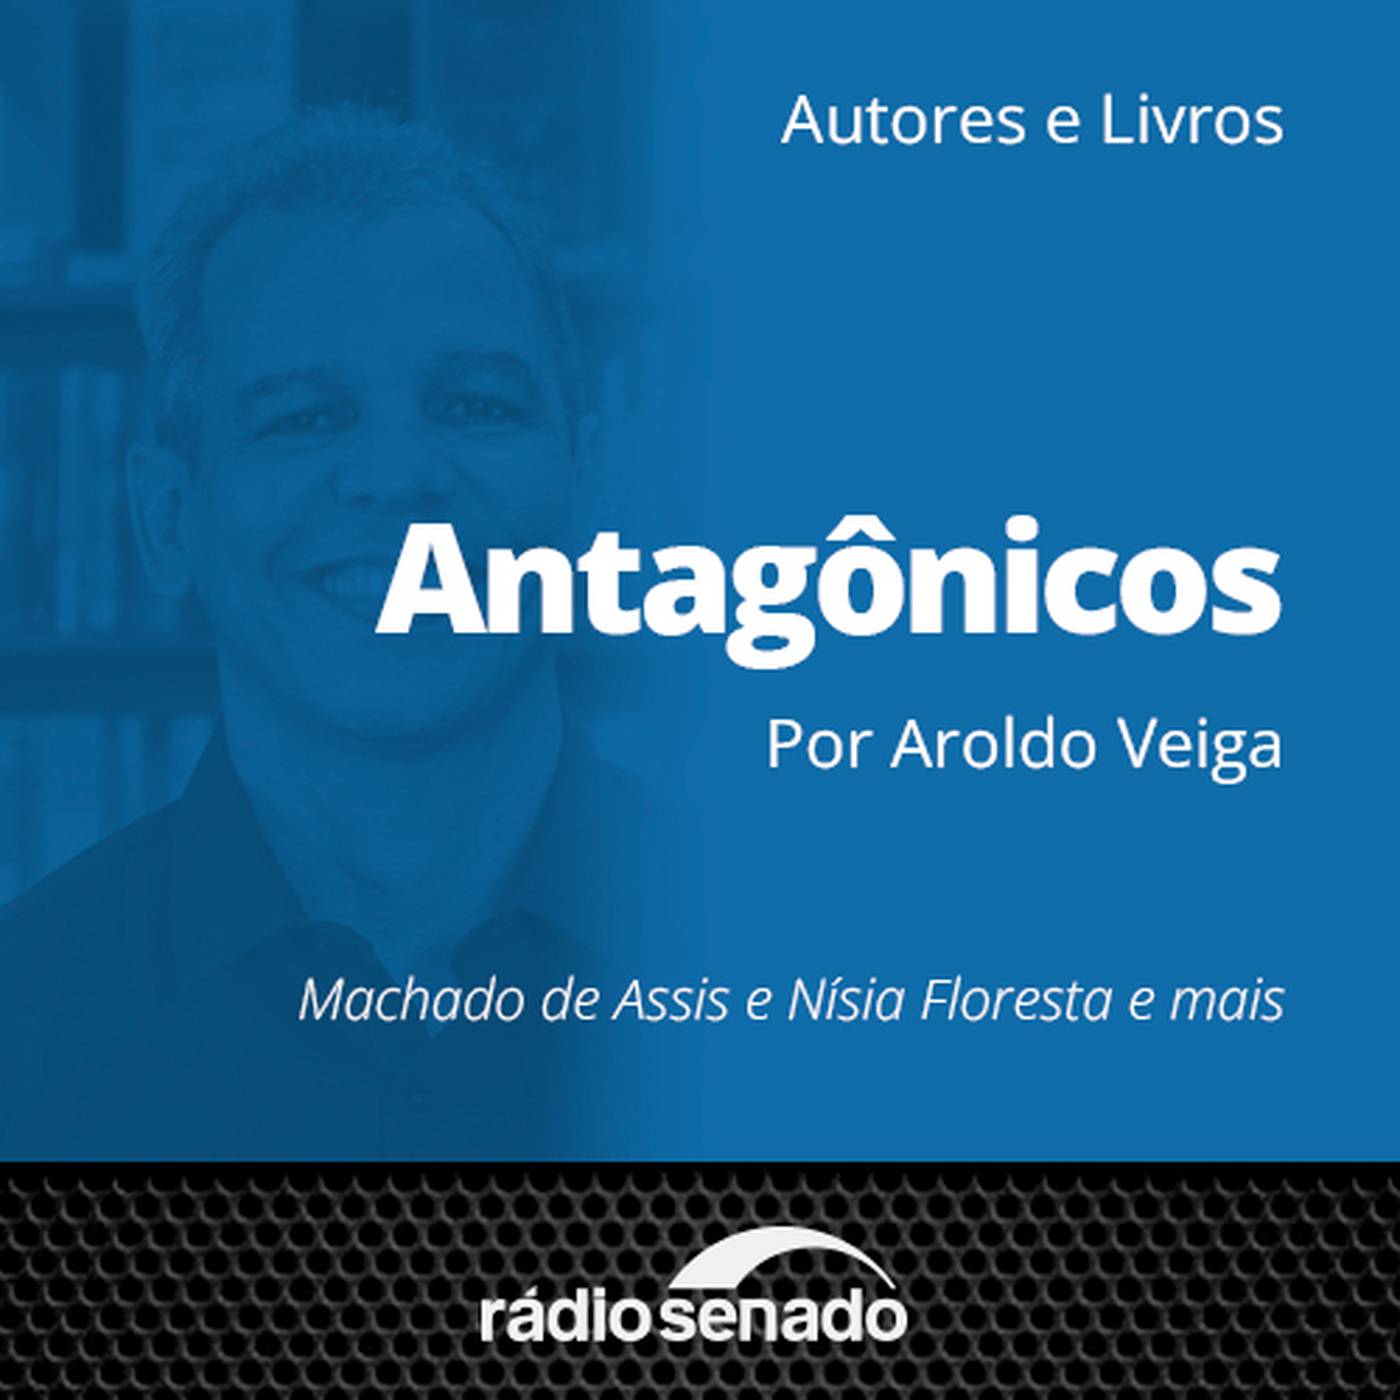 Antagônicos, de Aroldo Veiga, retrata um Brasil desigual